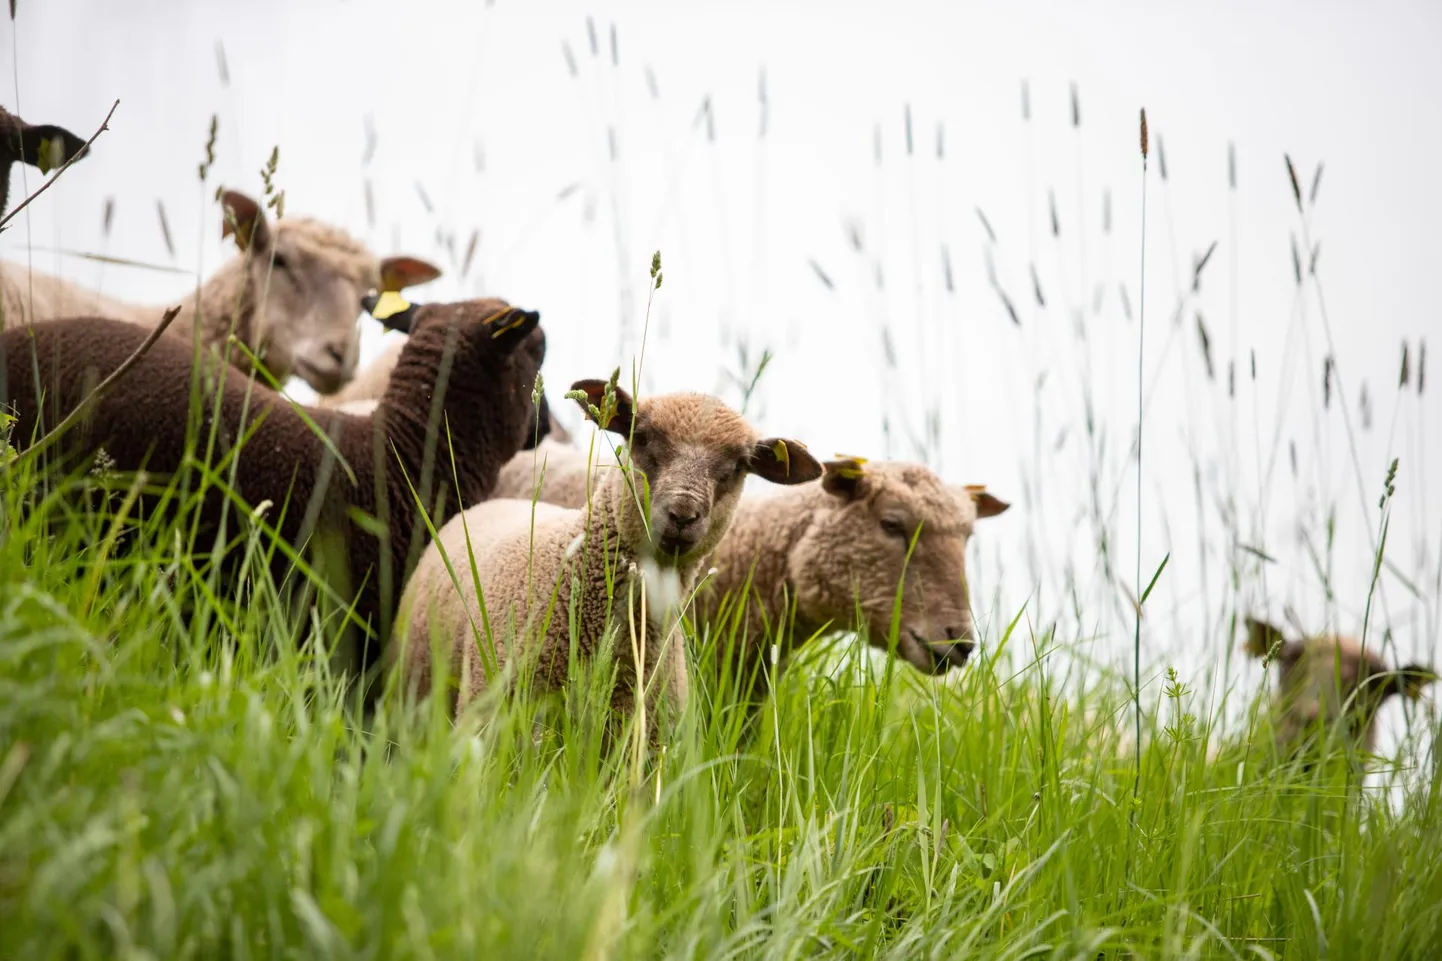 Statistikaameti andmeil oli lambaid ja kitsi Eestis möödunud aasta lõpu seisuga 74 400 ja nende arv on viimasel viiel aastal vähenenud.